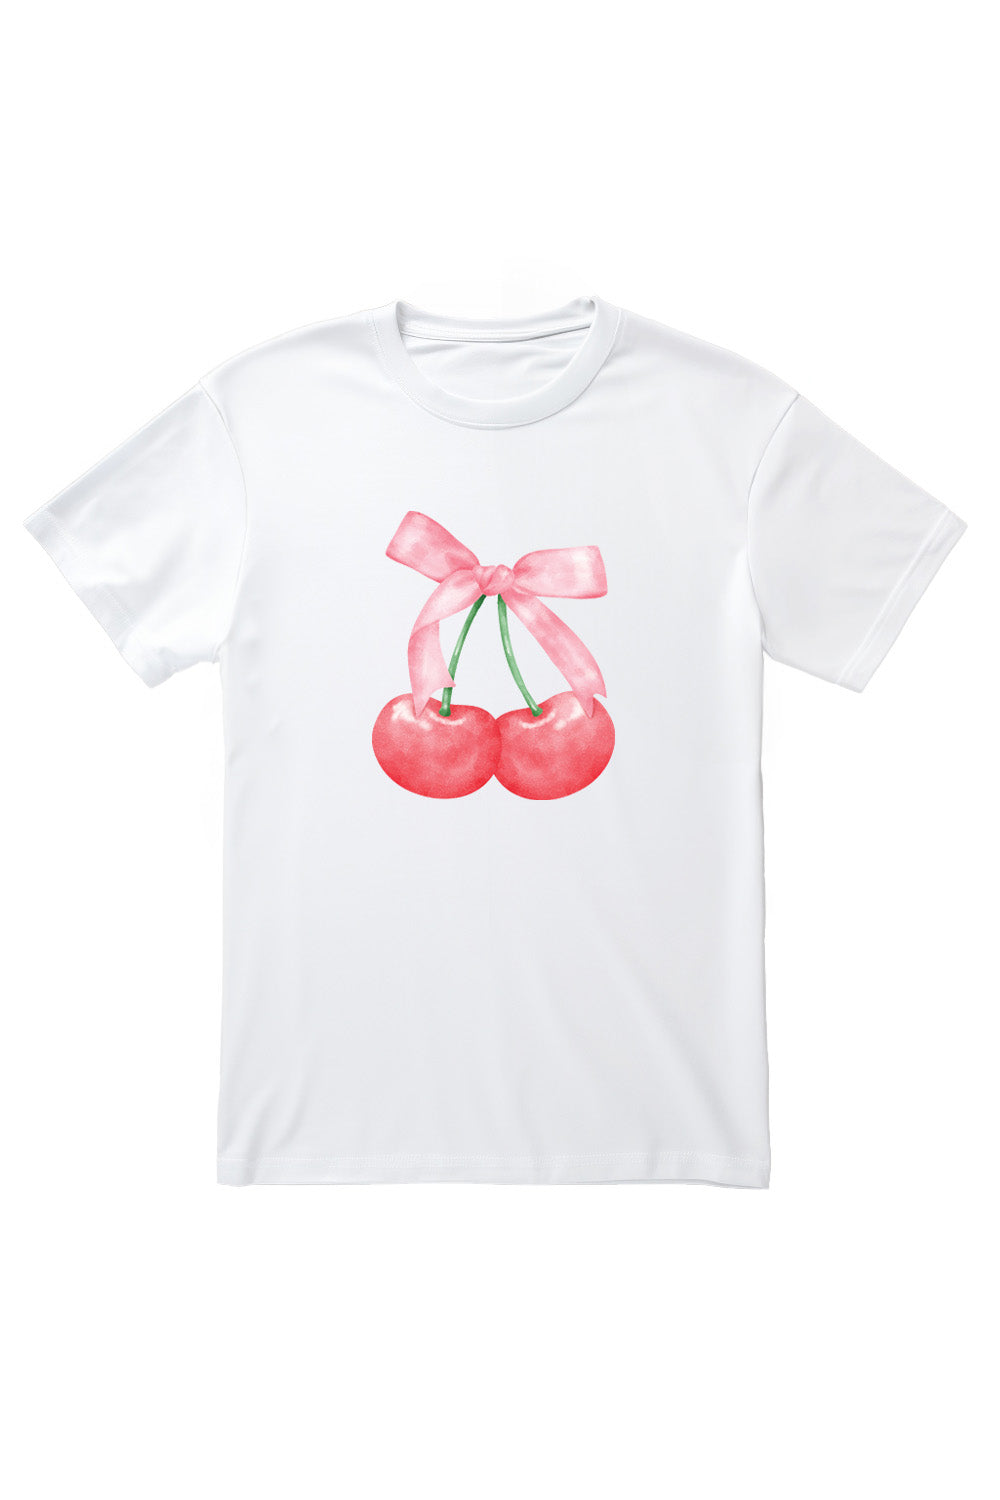 Twin Cherries T-Shirt in White (Custom Packs)